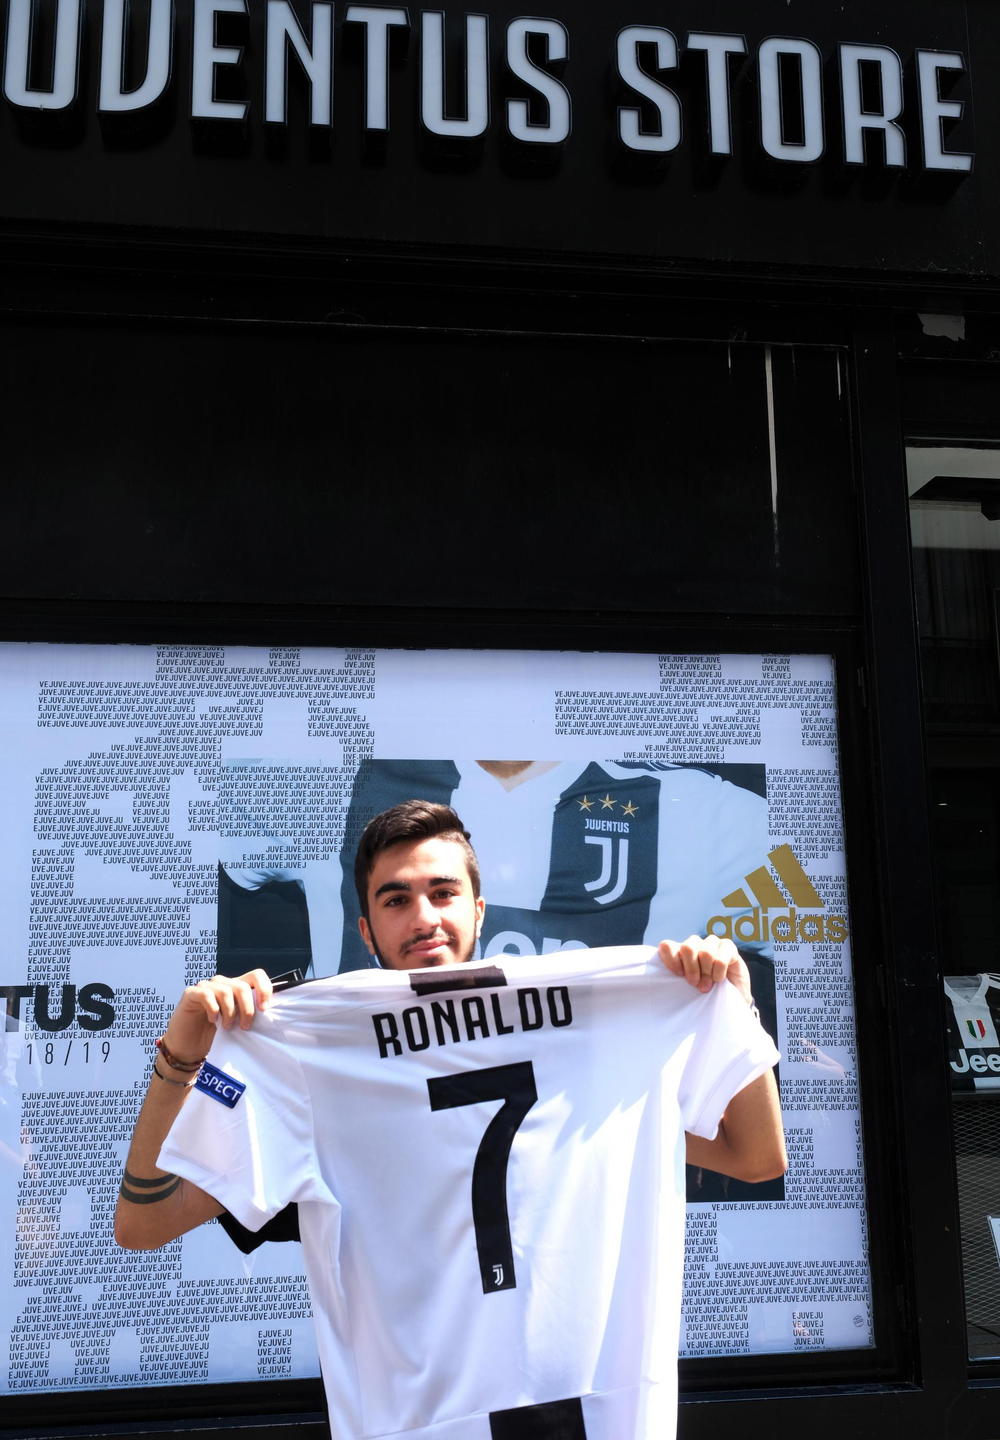 Još jedan ponosni vlasnik novog Ronaldovog dresa